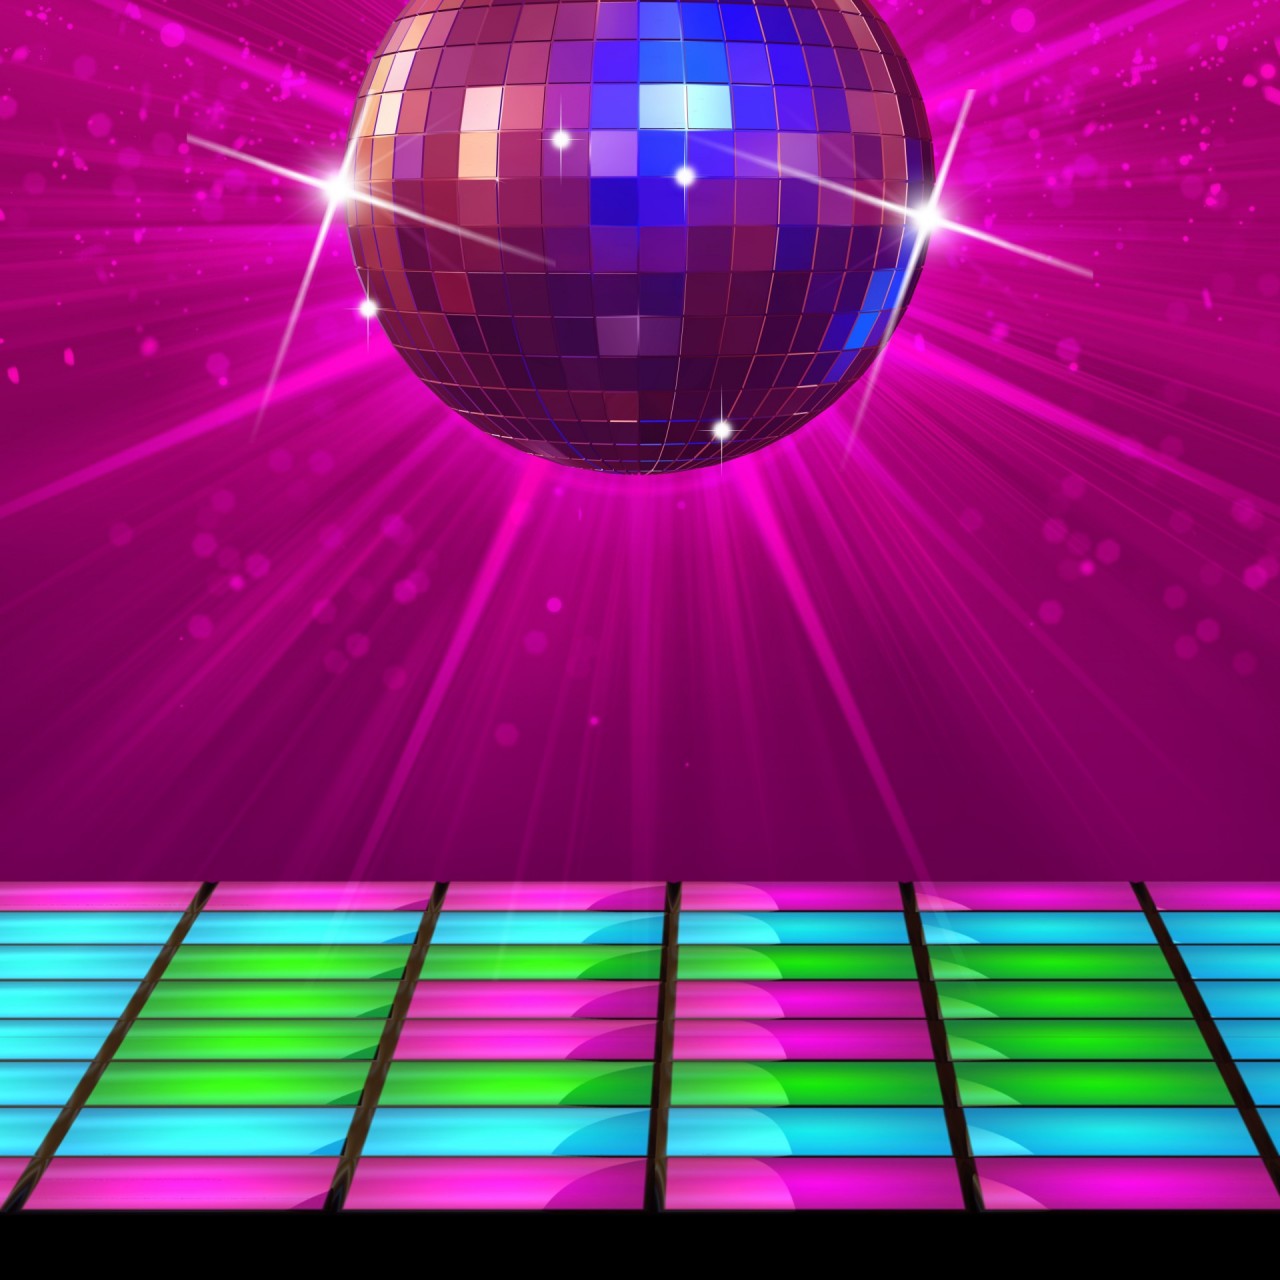 Dance Floor With Disco Ball - 1280x1280 Wallpaper 